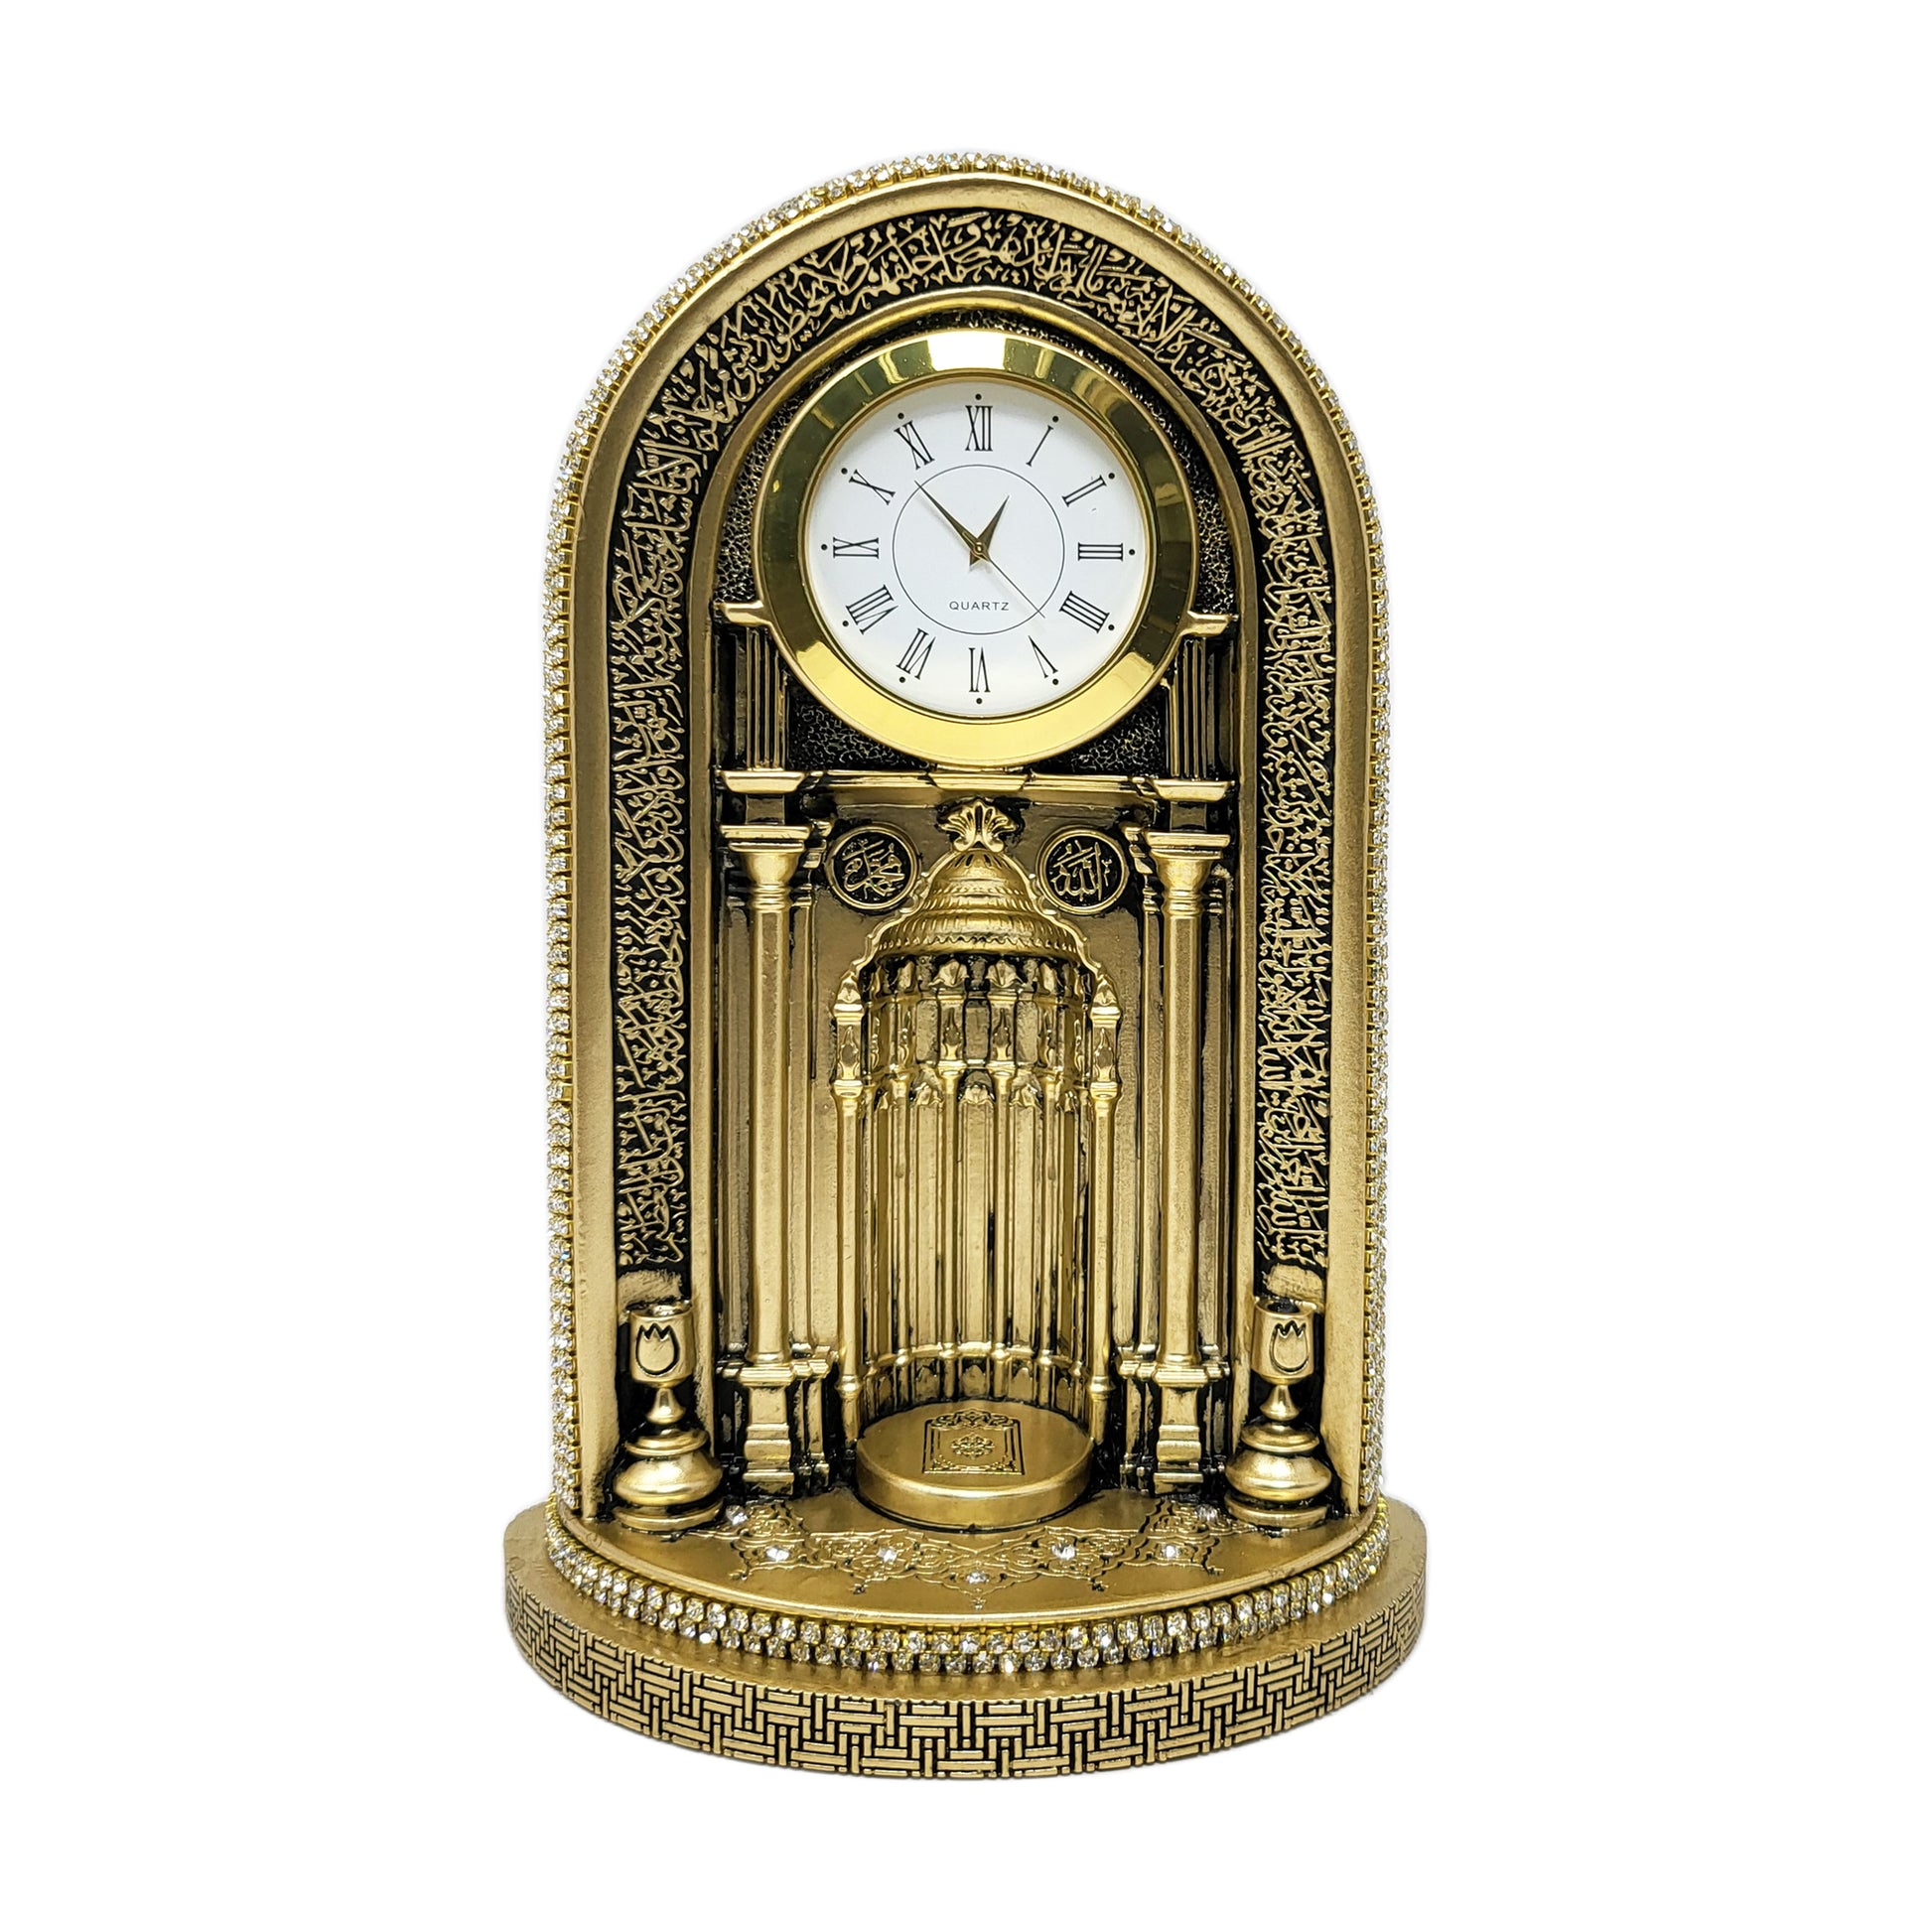 Quranic clock